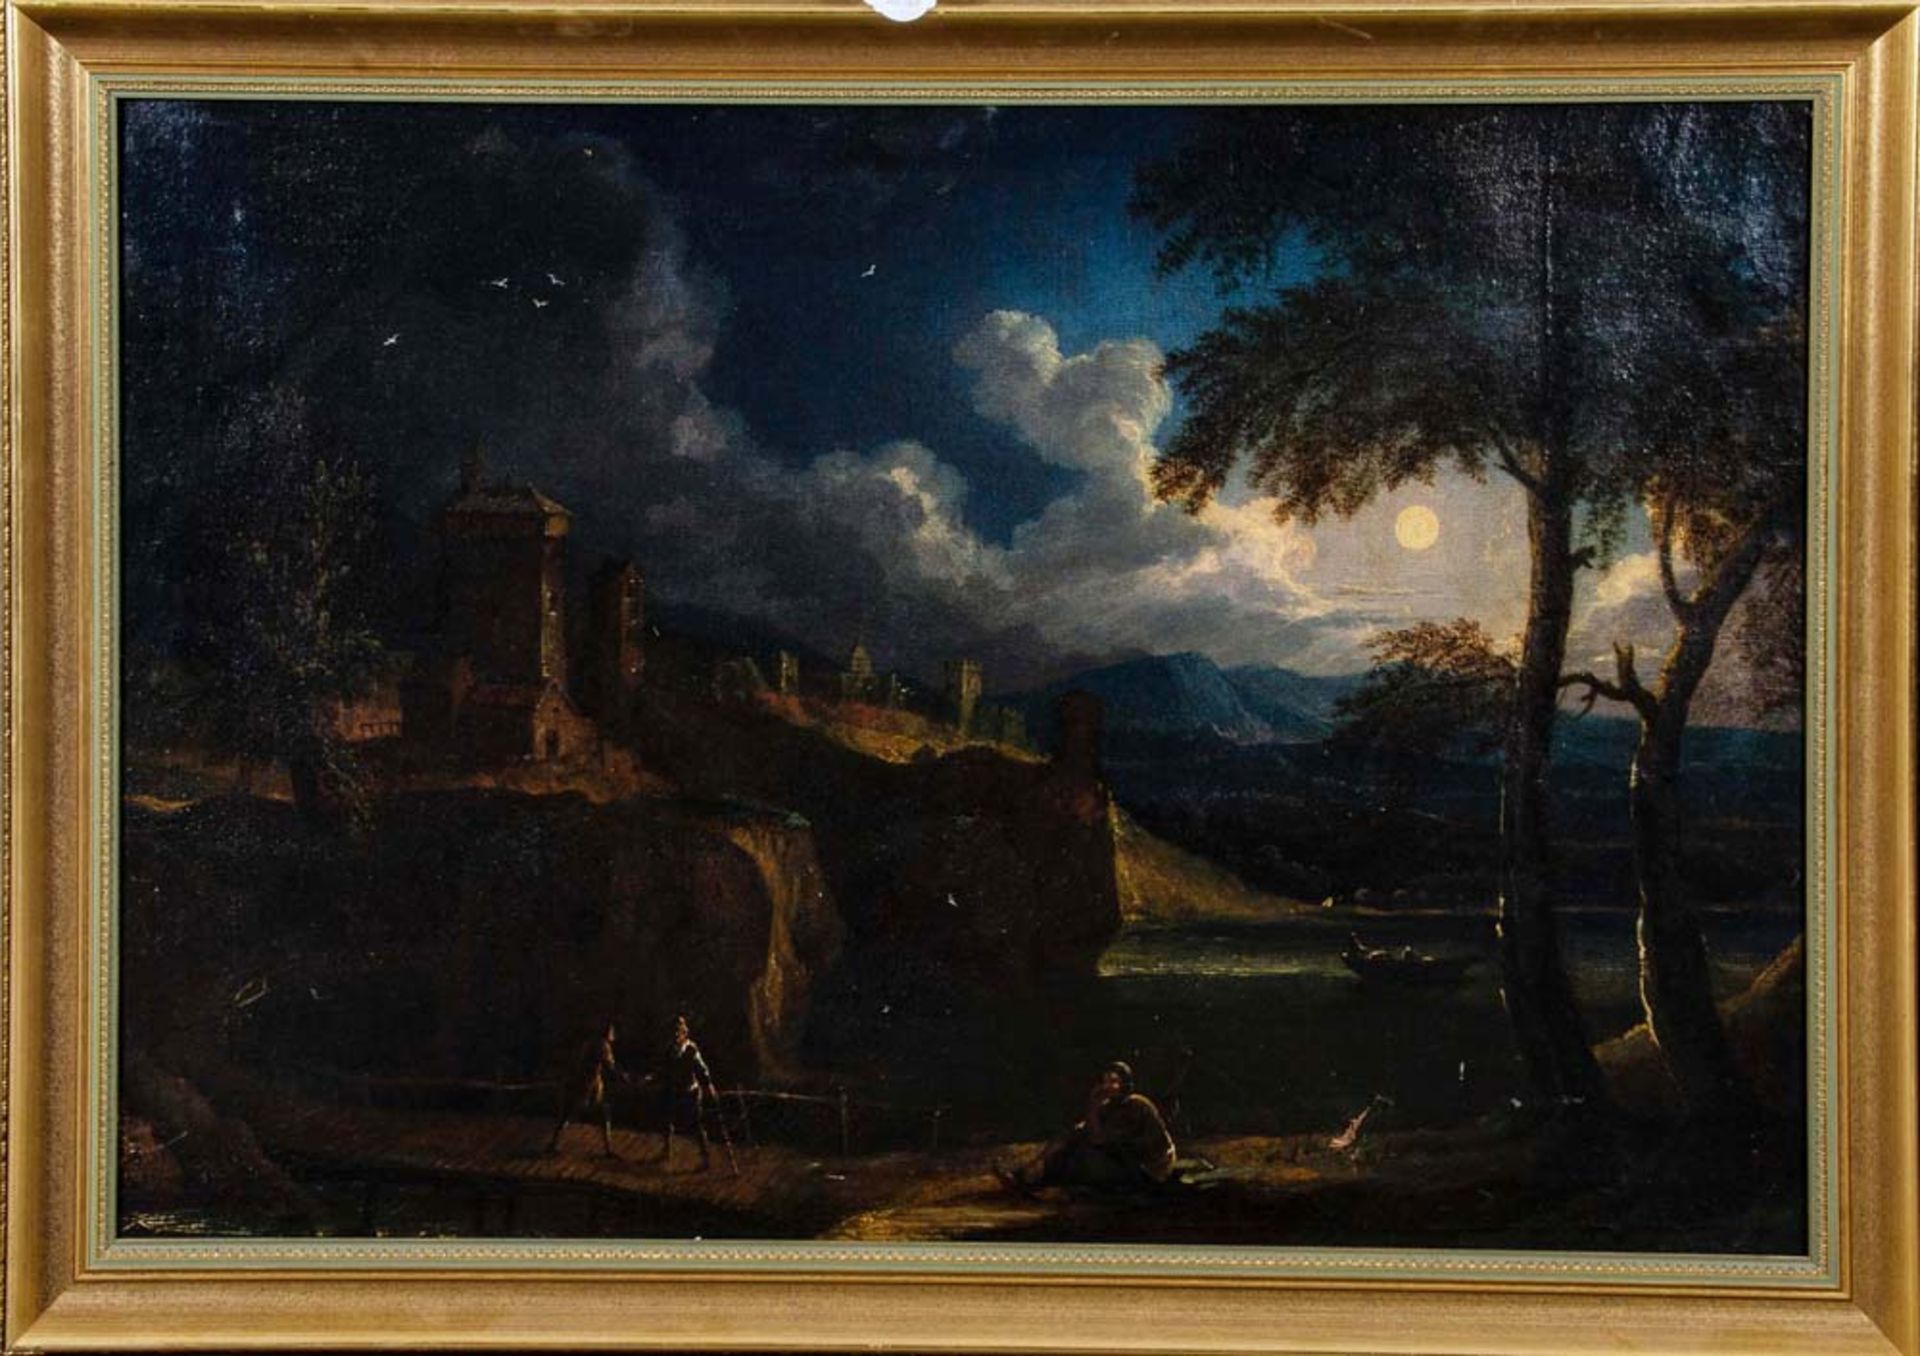 Maler des 18. Jhs. Abendstimmung am See, am Steg Personen, im Hintergrund Gebirge, Öl/Lw.,